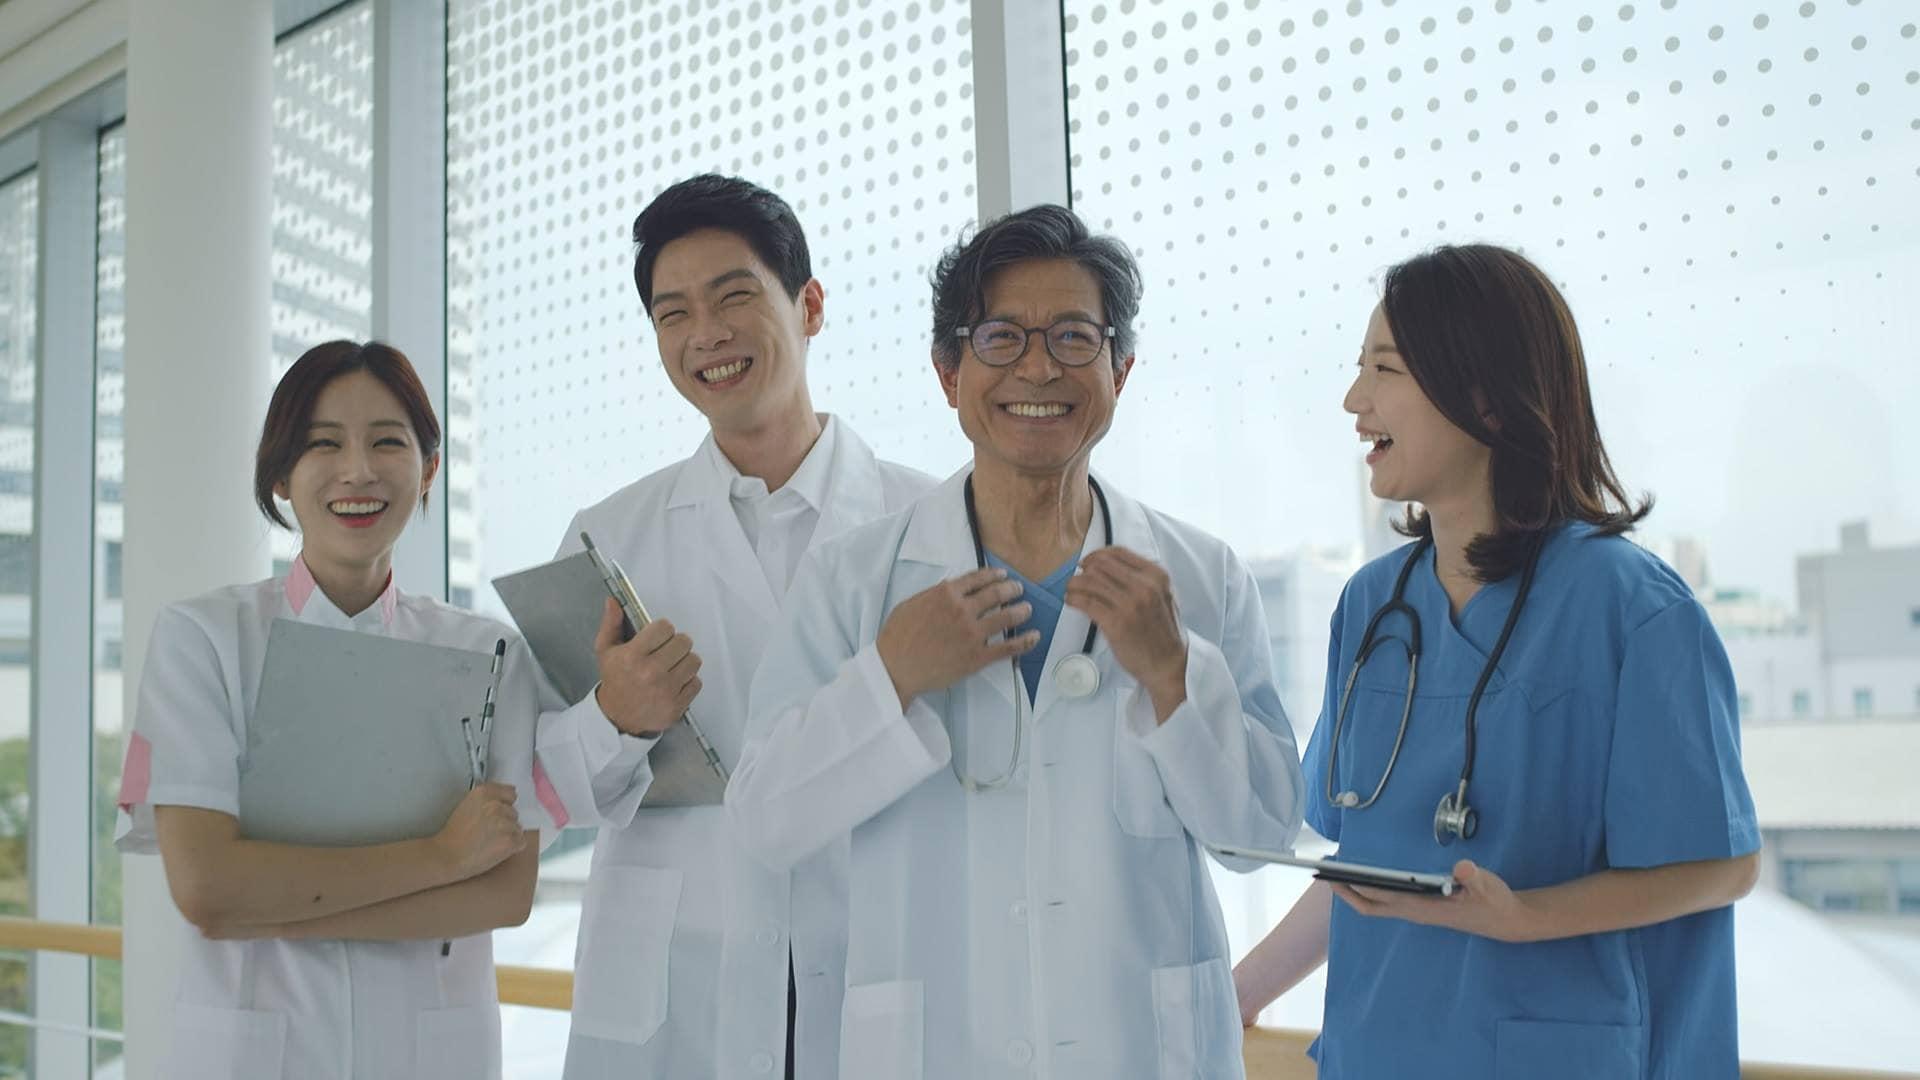 التأمين الصحي للطالب الدولي في كوريا الجنوبية